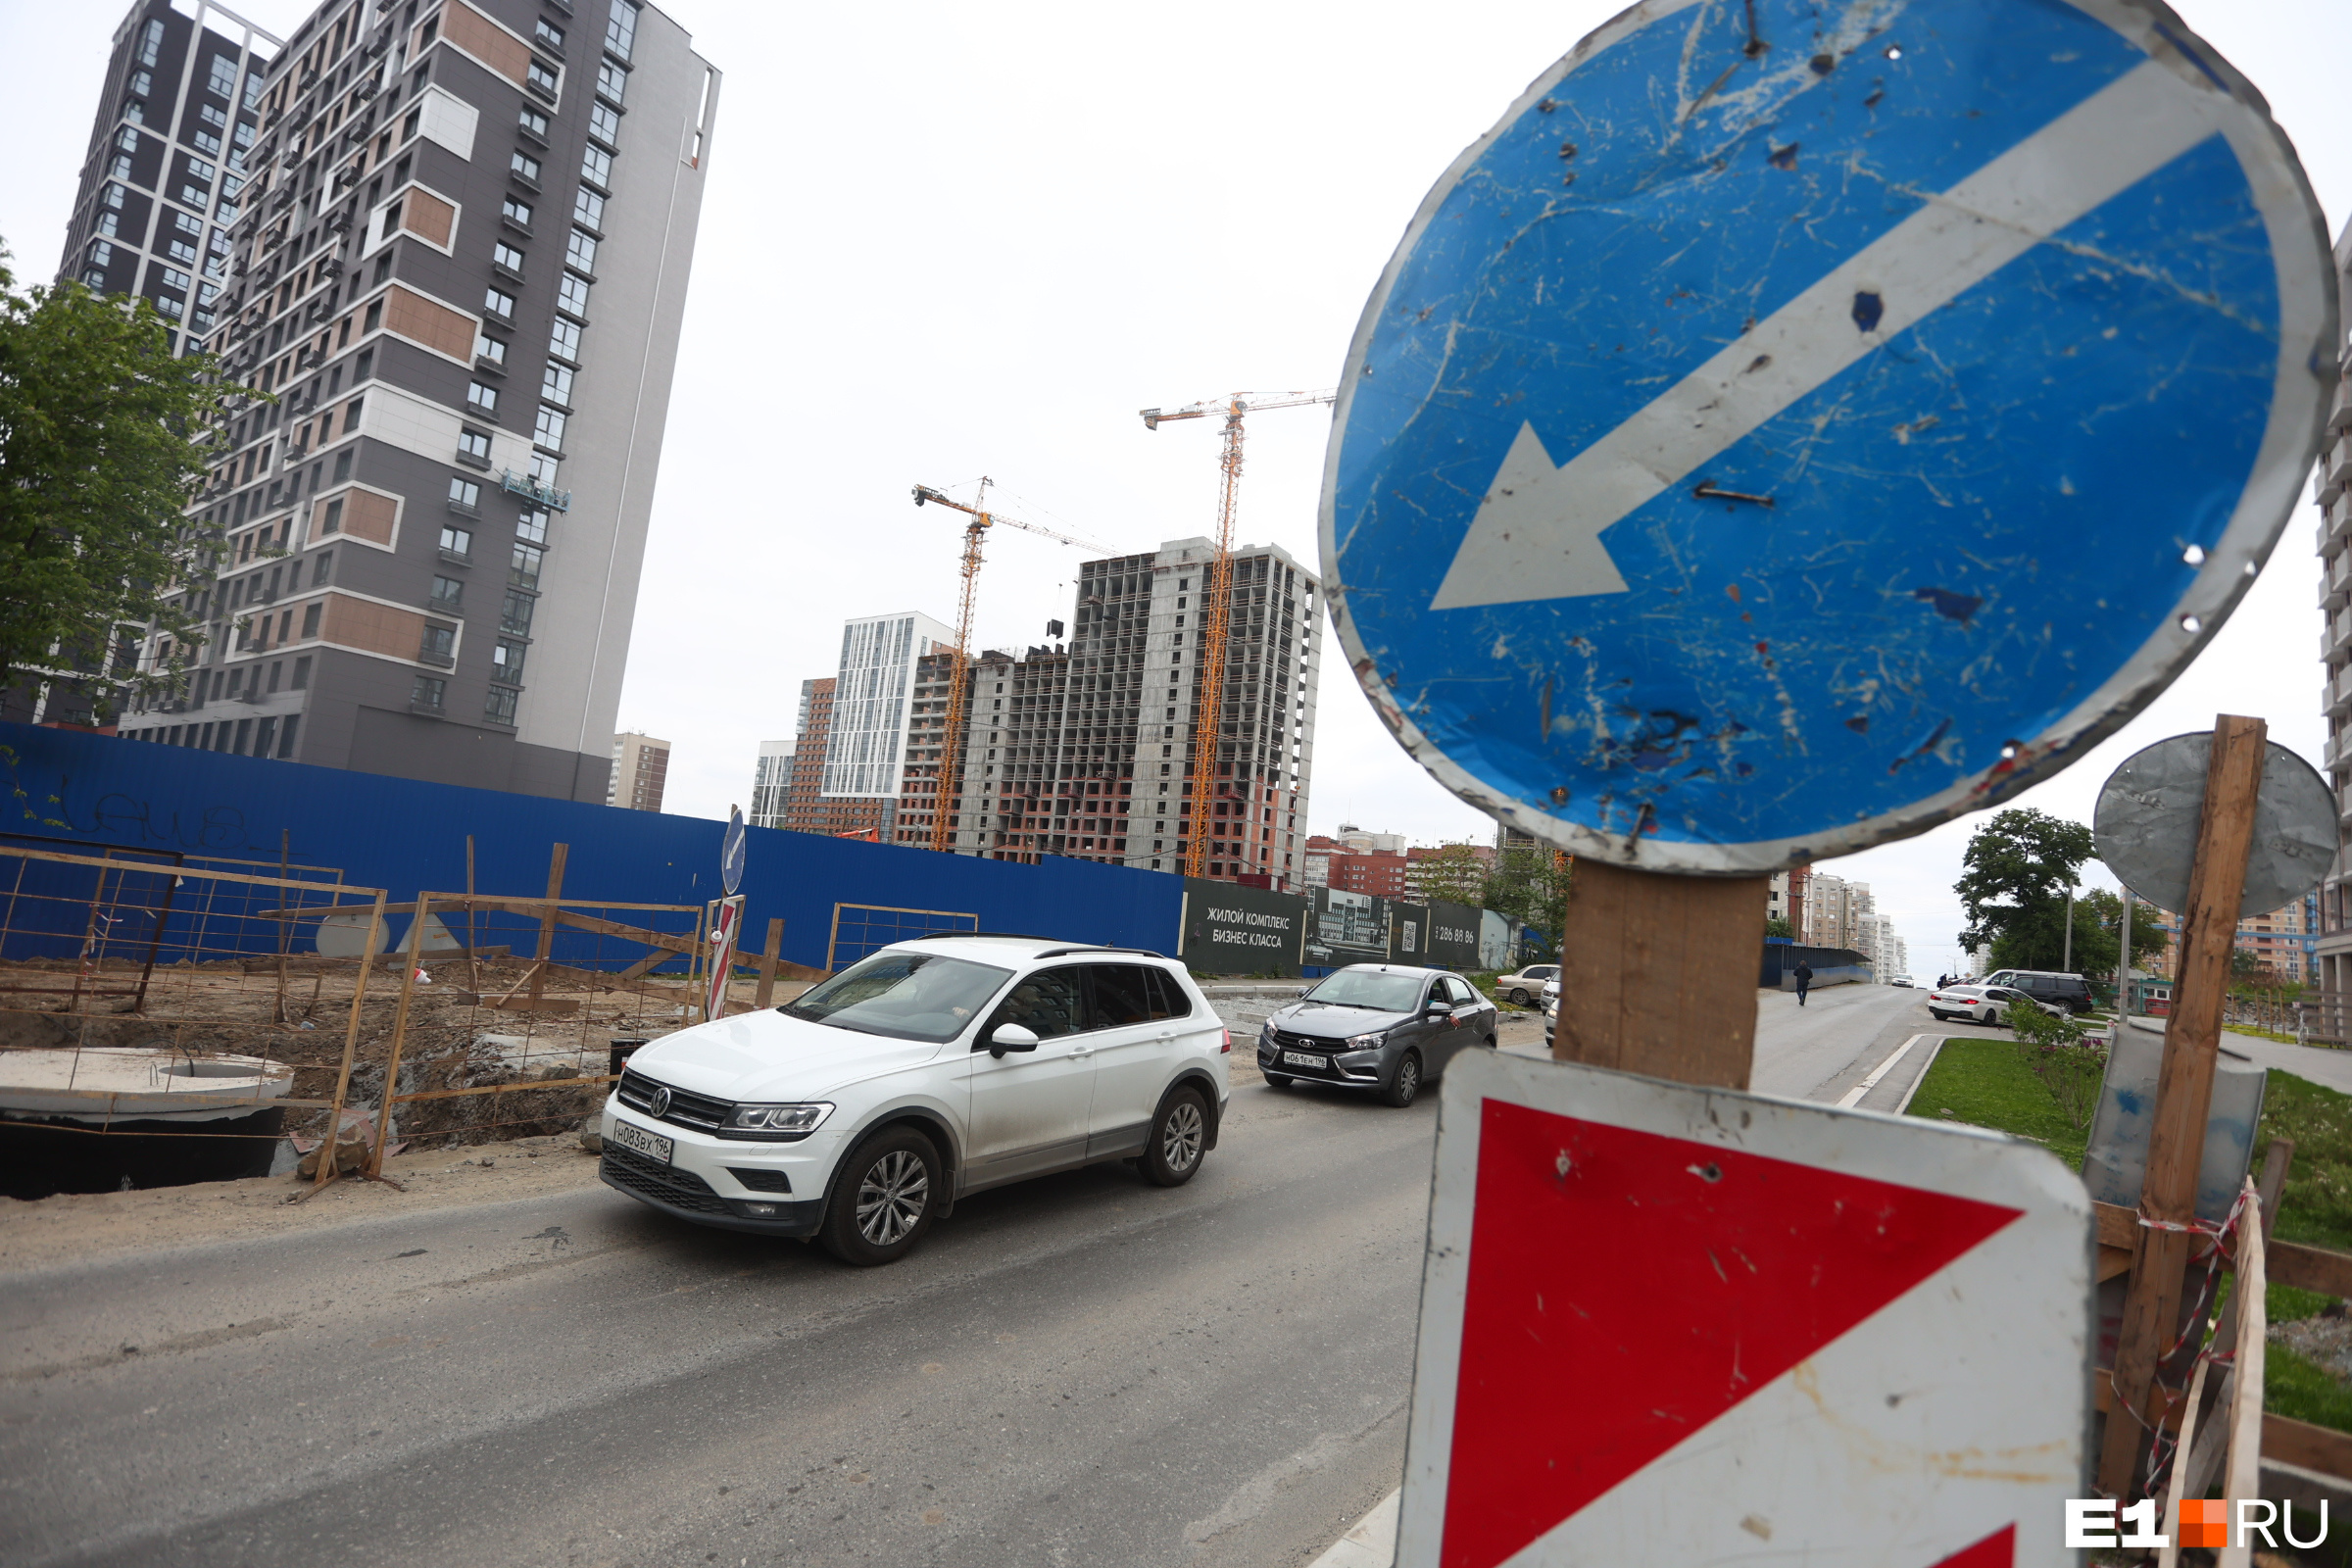 Участок улицы Циолковского будет закрыт на реконструкцию до осени